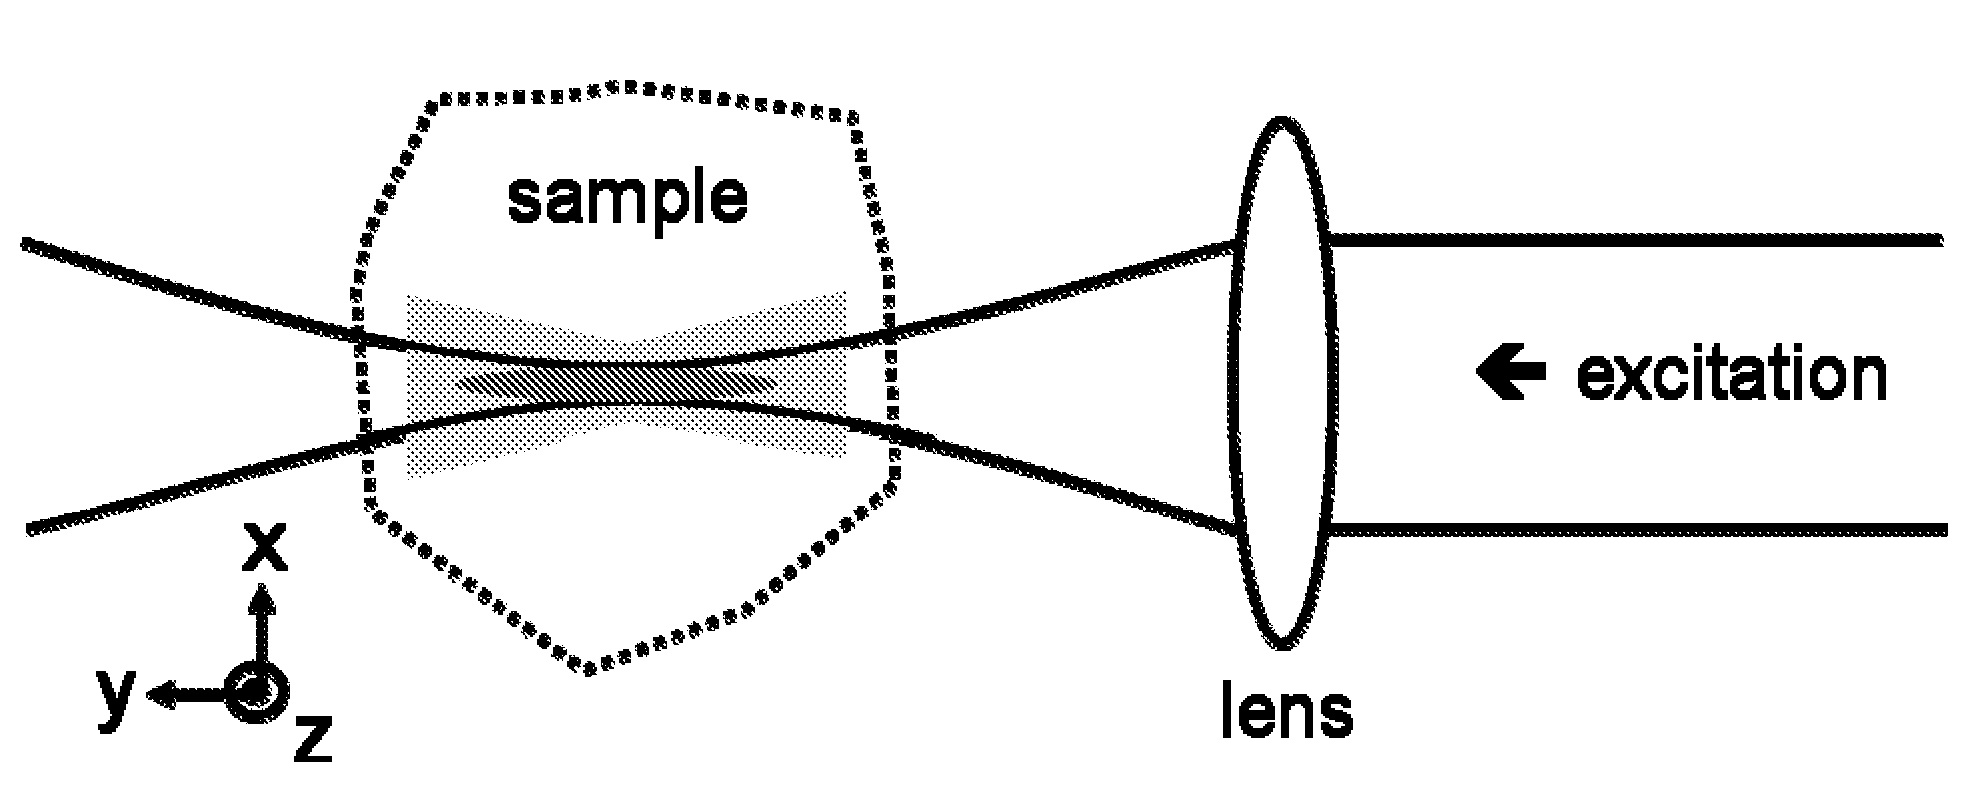 Multiple-photon excitation light sheet illumination microscope